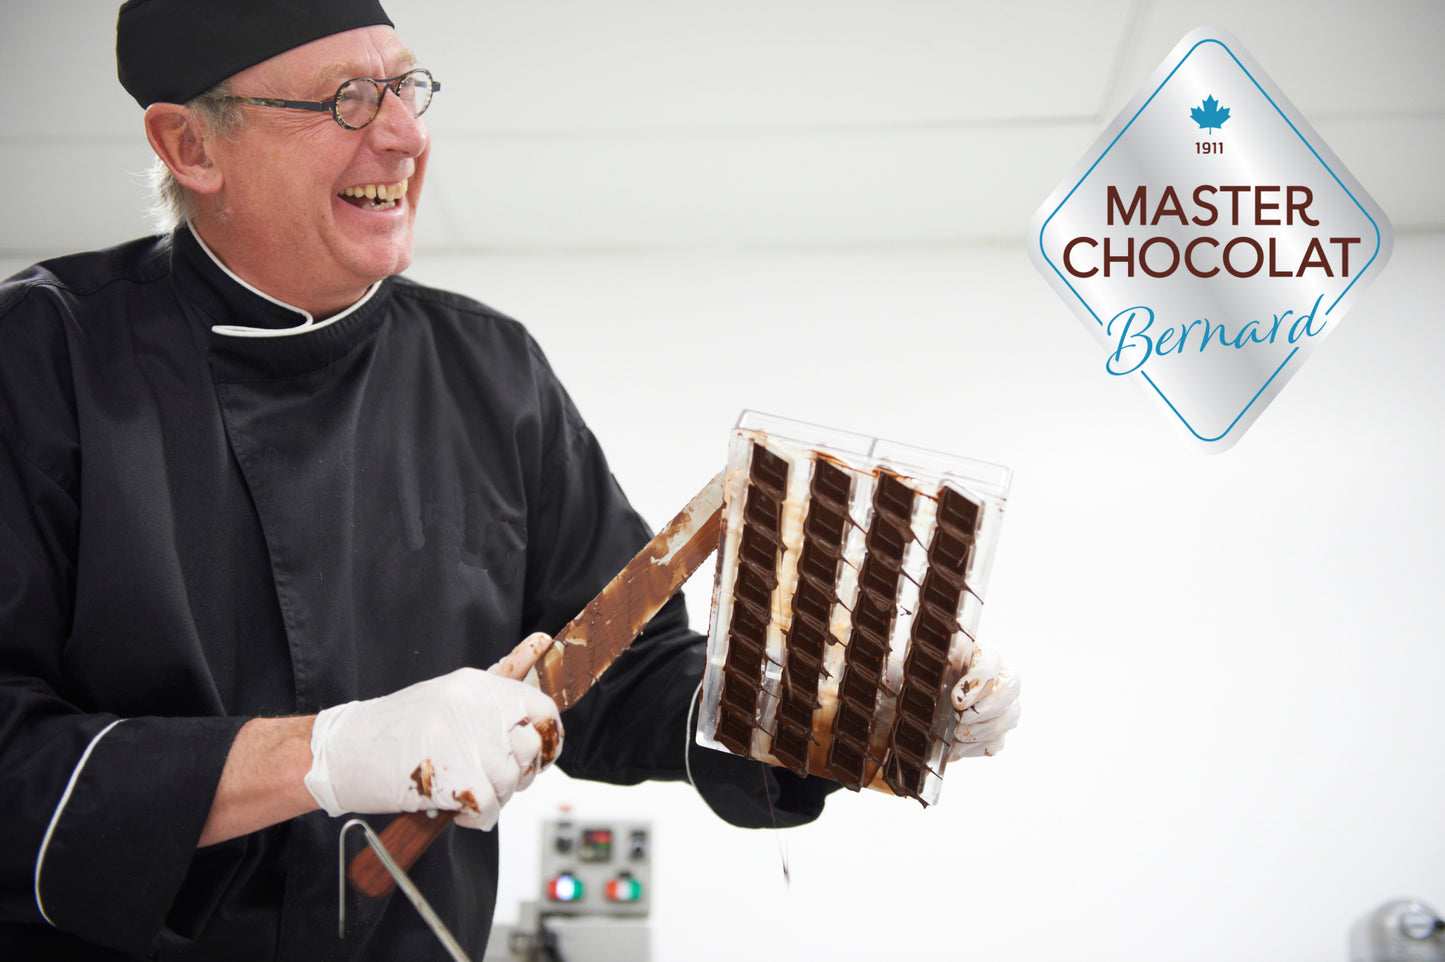 Signature Chocolate Making with Bernard Callebaut!